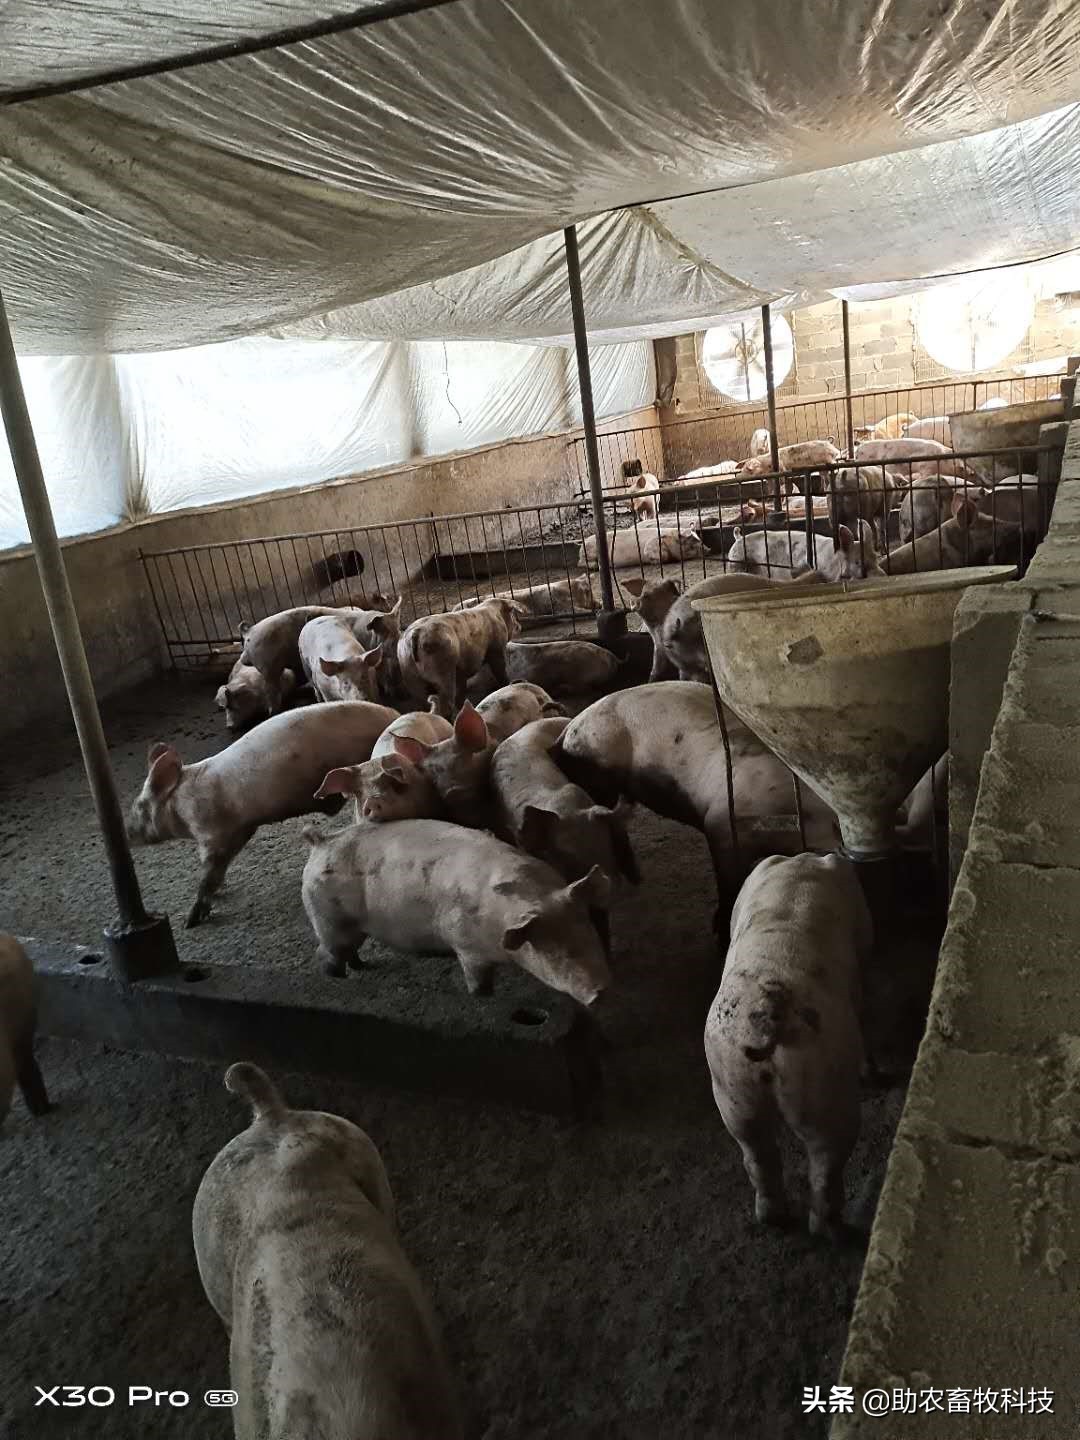 这个猪场长期在自配料中添加养猪专用复合益生菌效果好，猪病减少